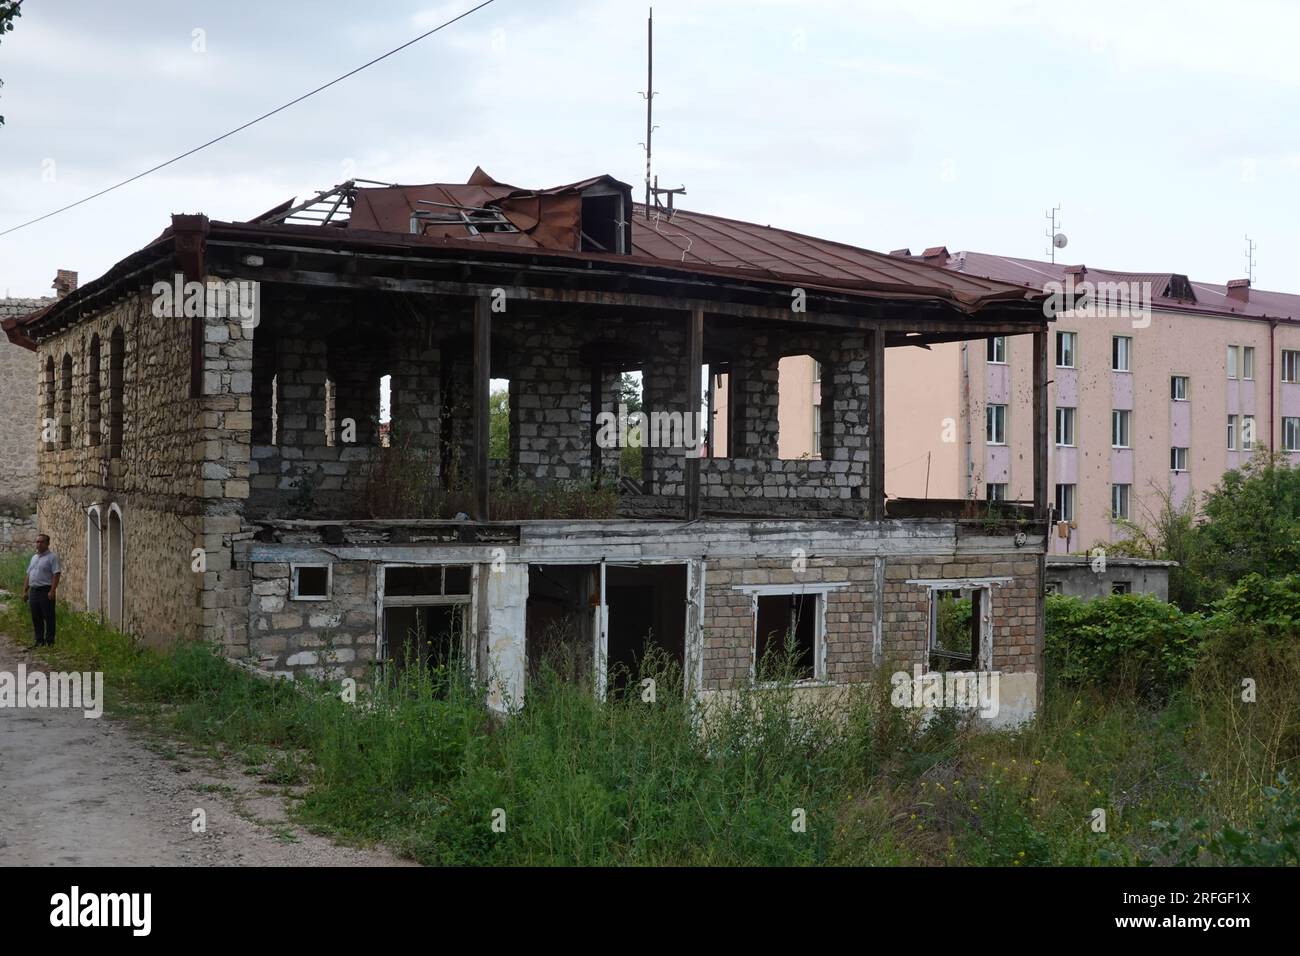 Shusha, Shushi, Susa an Azerbaijani showing parts of the City centre damaged by the 2020 Nagorno Karabakh and previous wars. Stock Photo